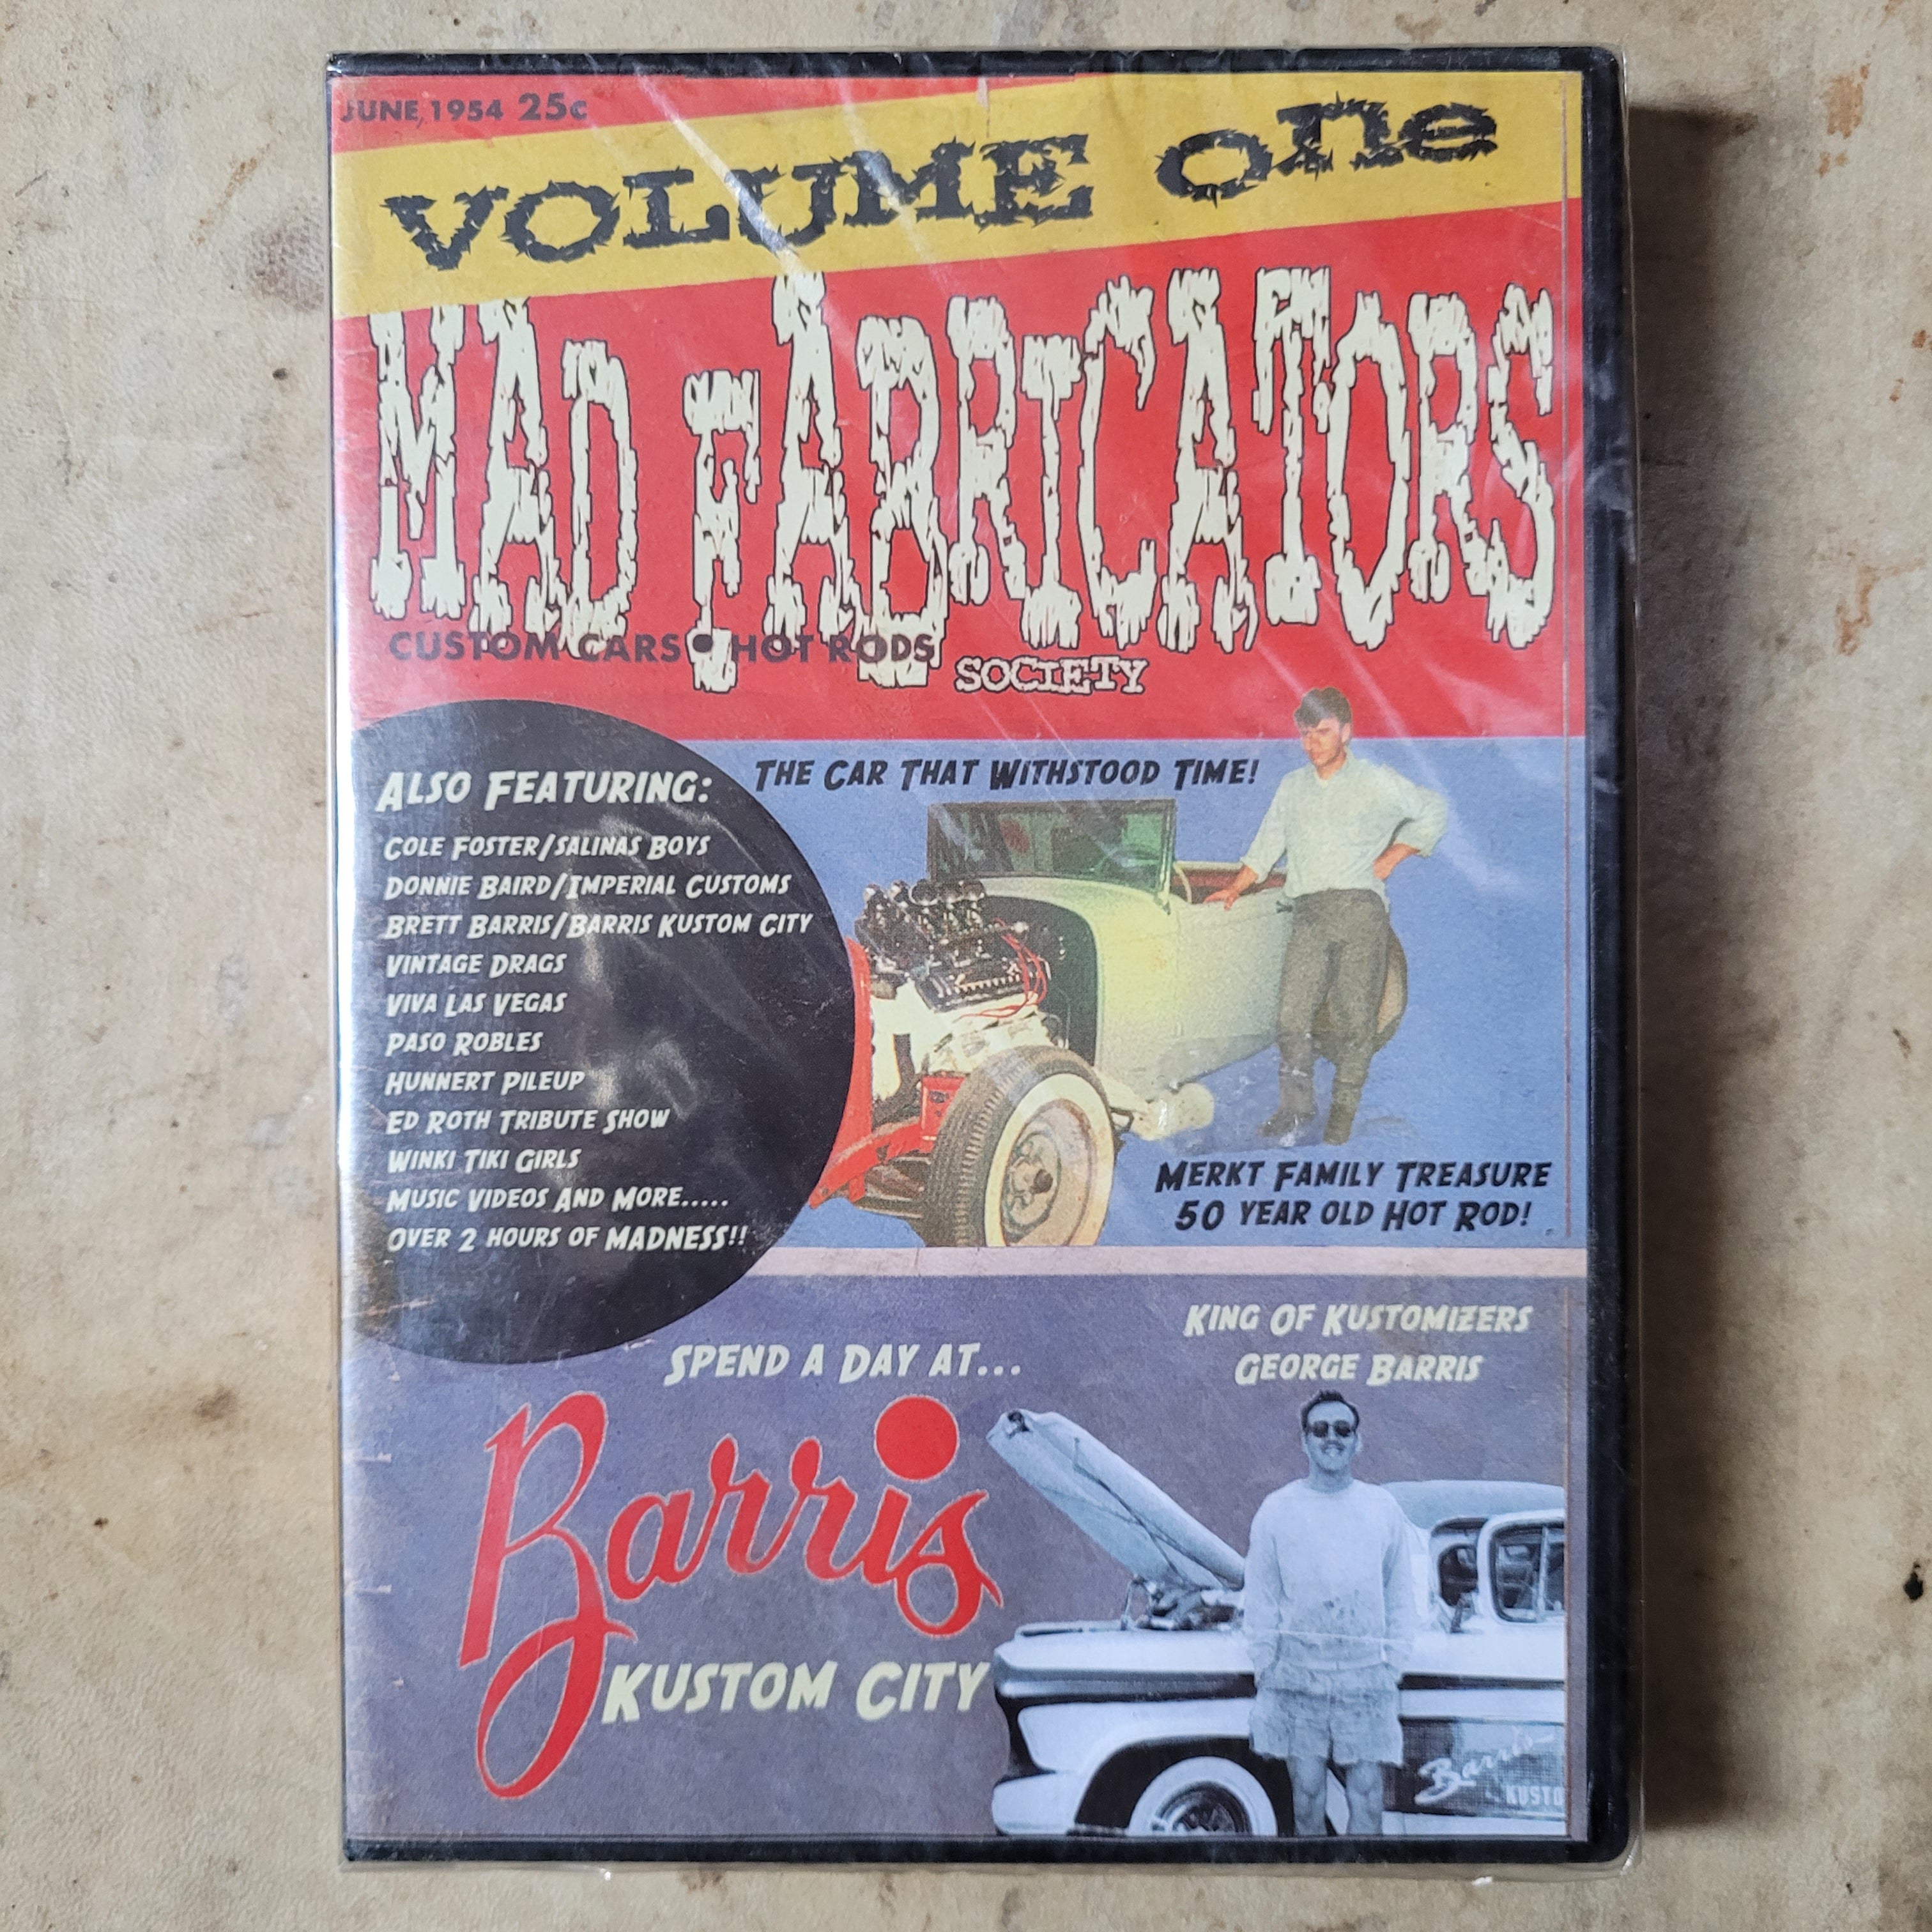 MAD FABRICATORS 1 DVD マッドファビリケーターズ ホットロッド HOT ROD KUSTOM BARRIS - DVD